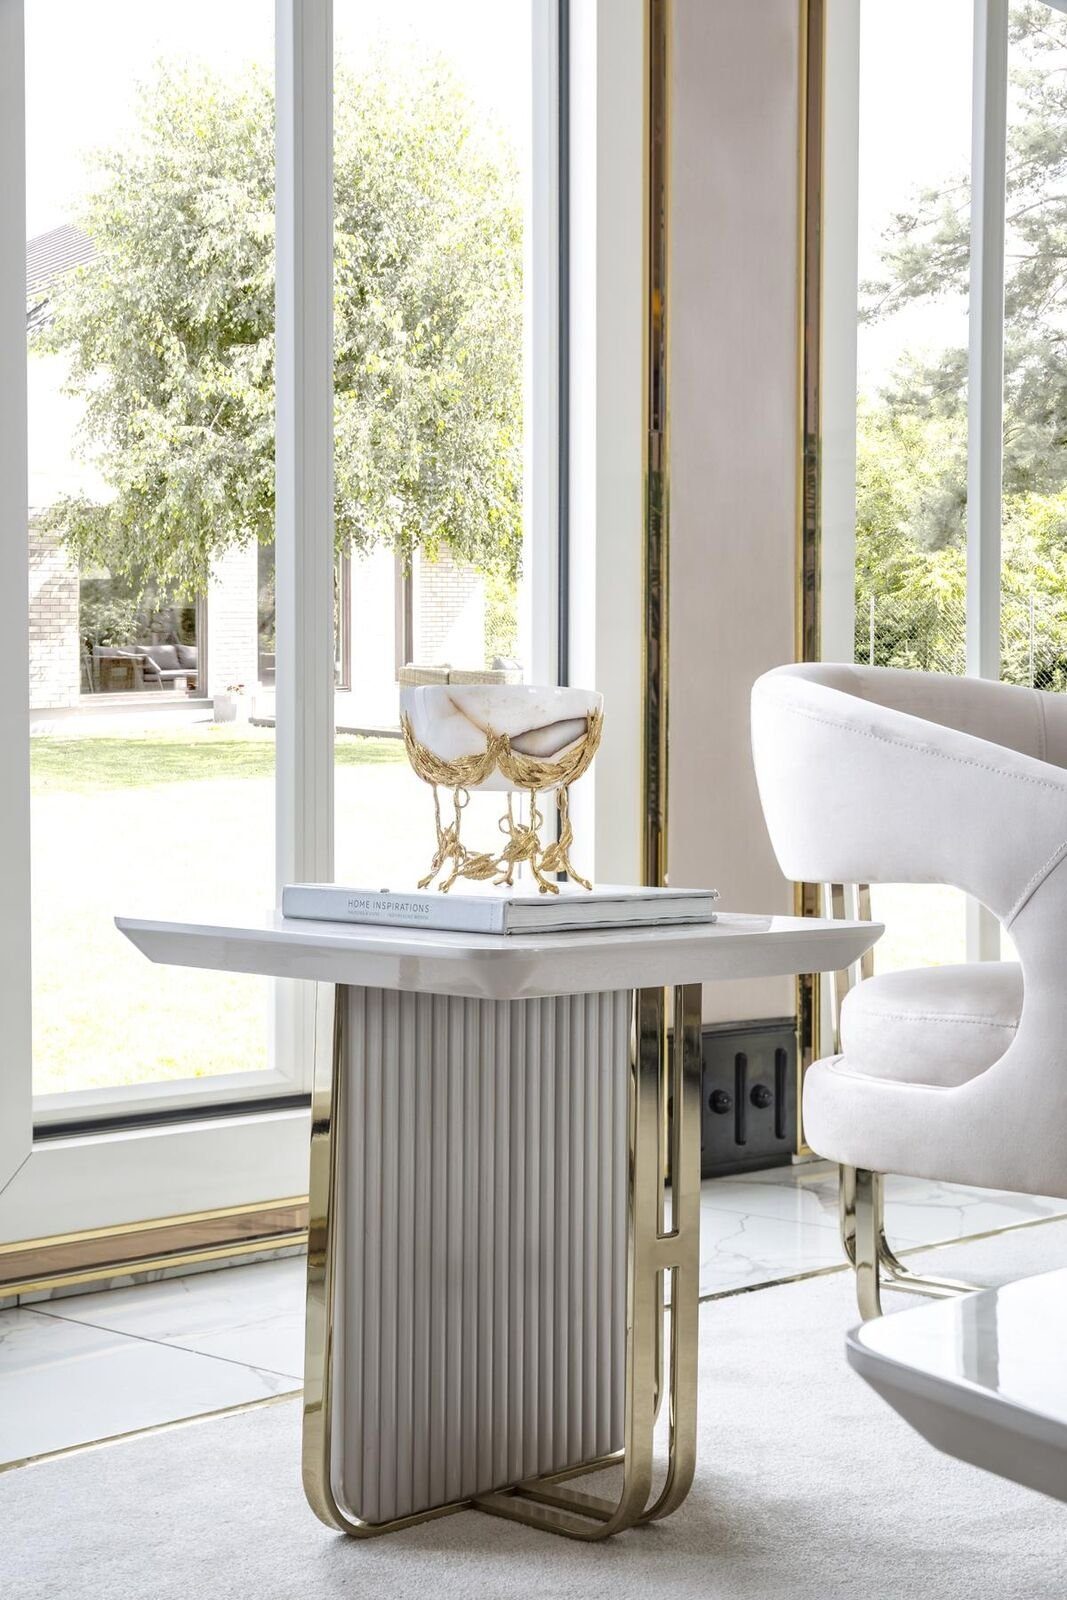 JVmoebel Beistelltisch Beistelltisch Weiß Wohnzimmer Metall Glas Neu Modern Design Möbel